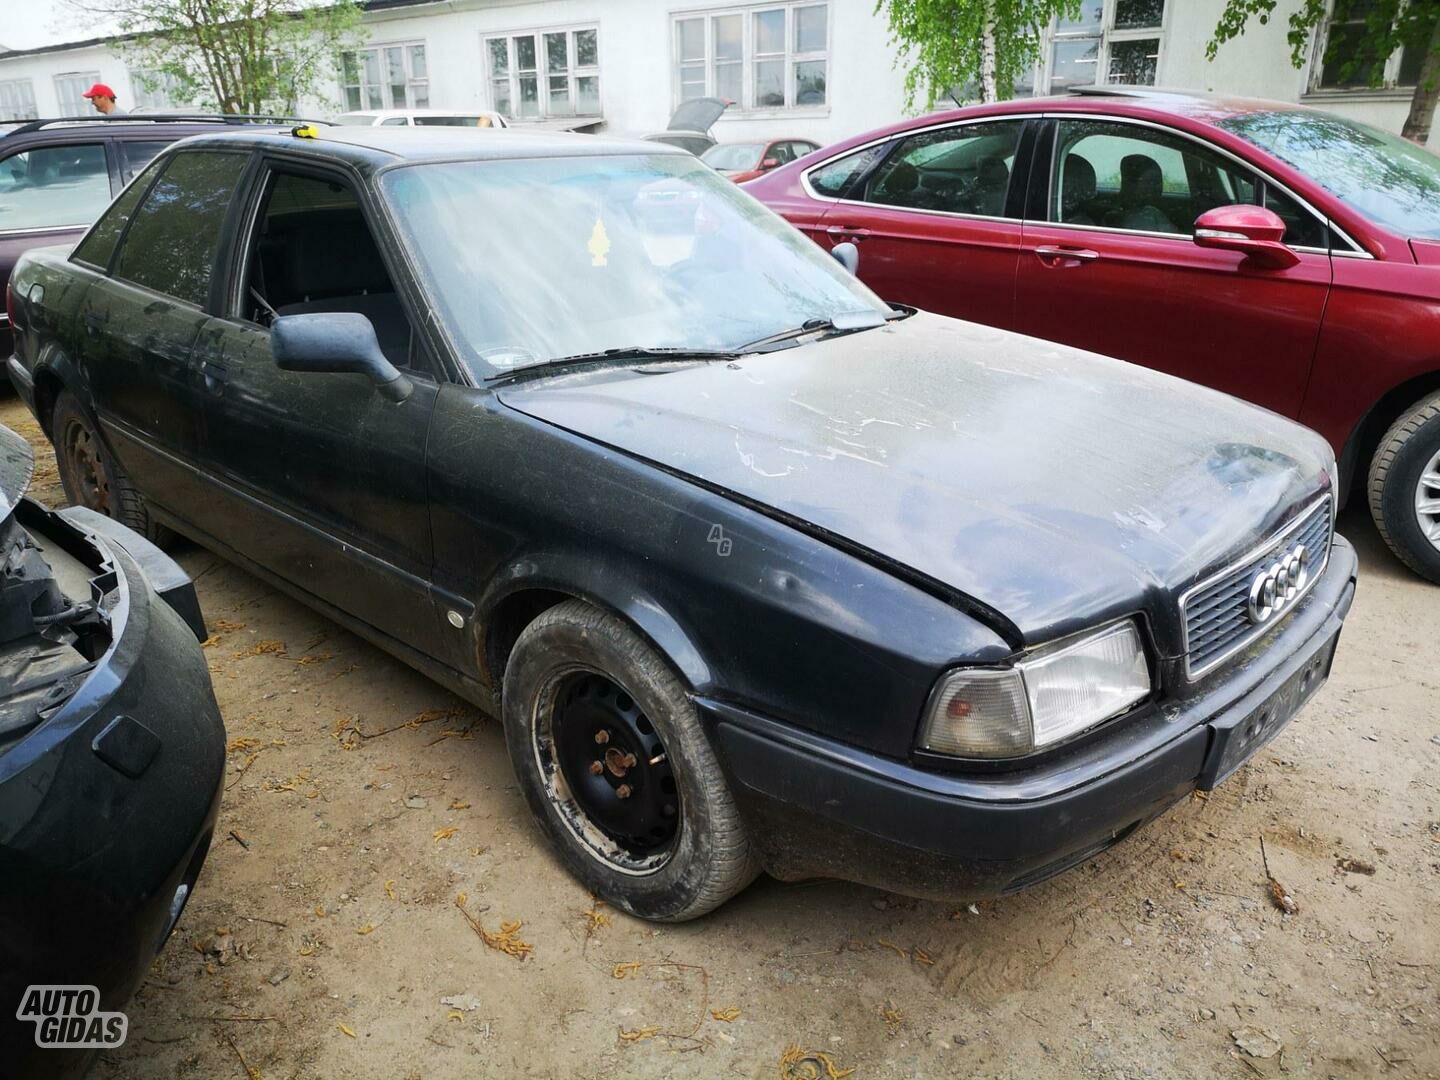 Audi 80 1992 m dalys